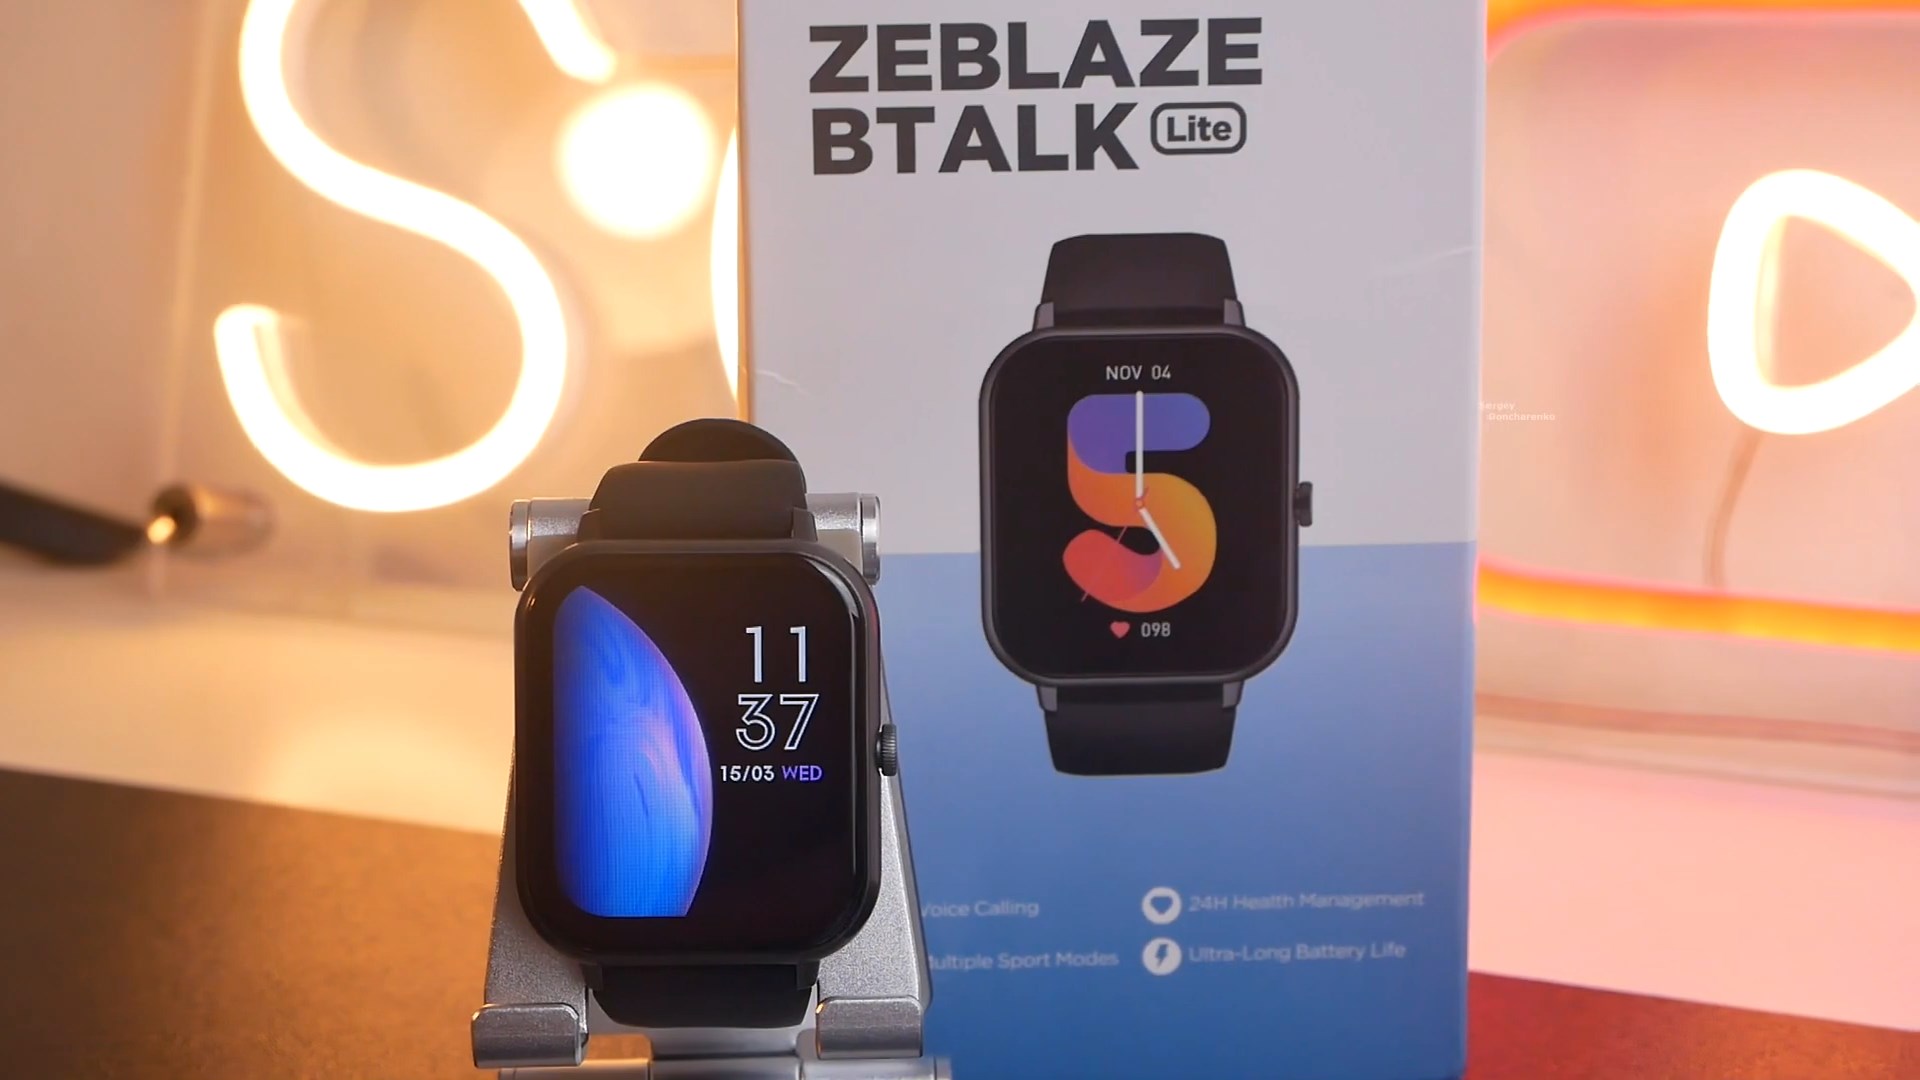 Zeblaze Btalk Lite - Best Calling Smartwatch Under $20